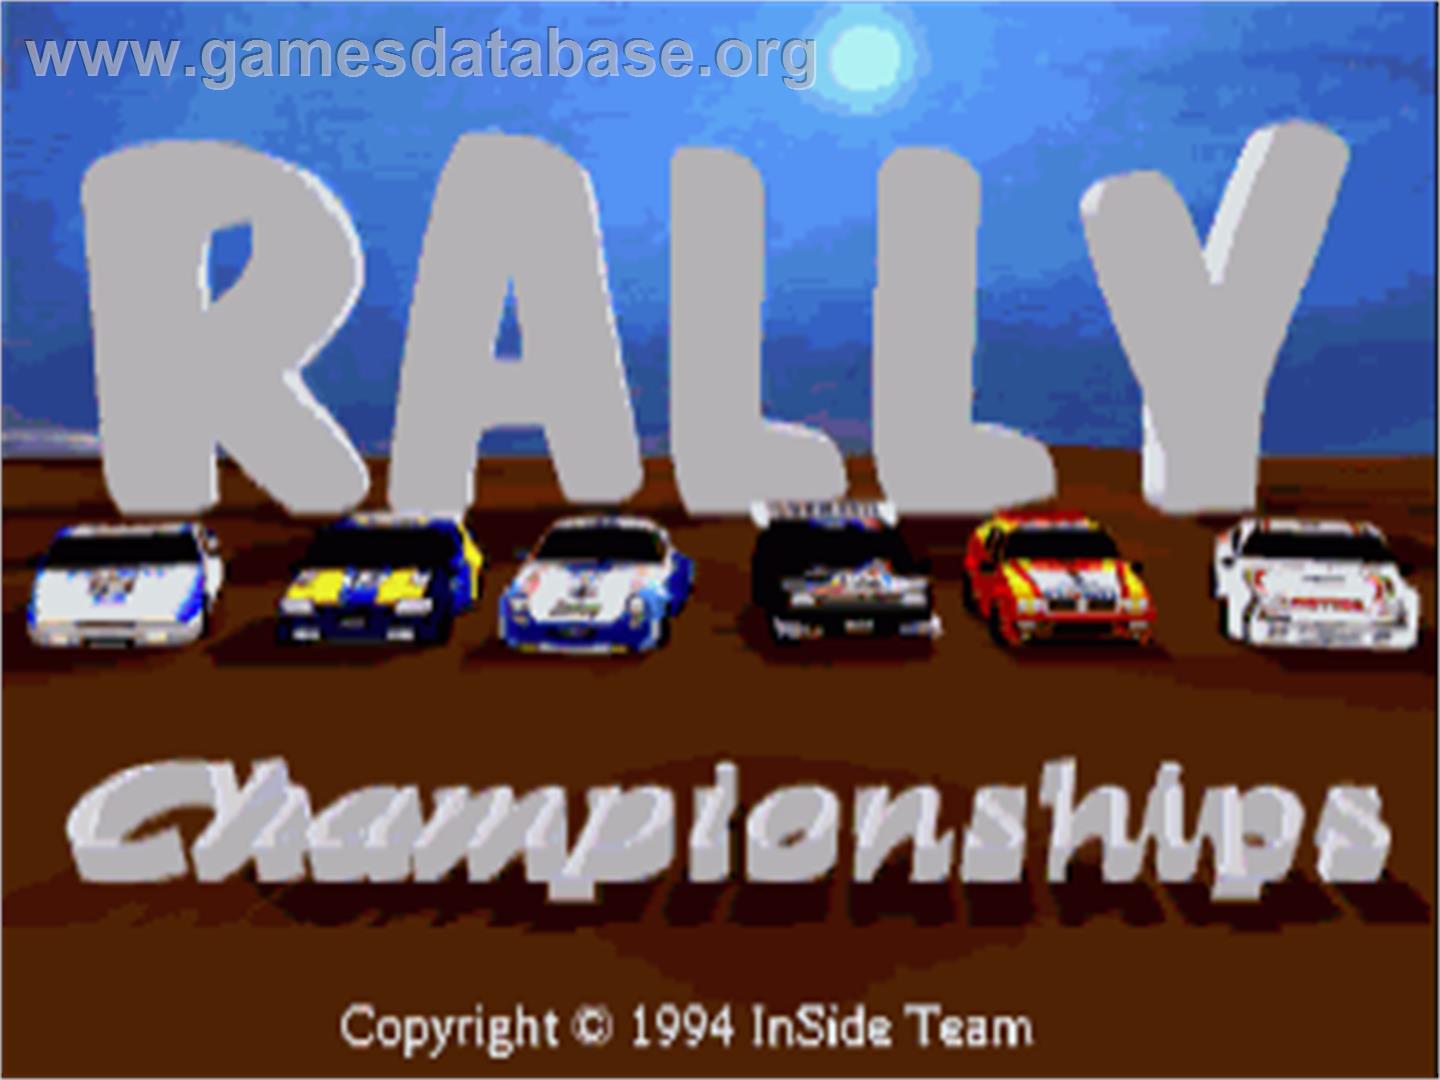 Rally Championships - Commodore Amiga - Artwork - Title Screen